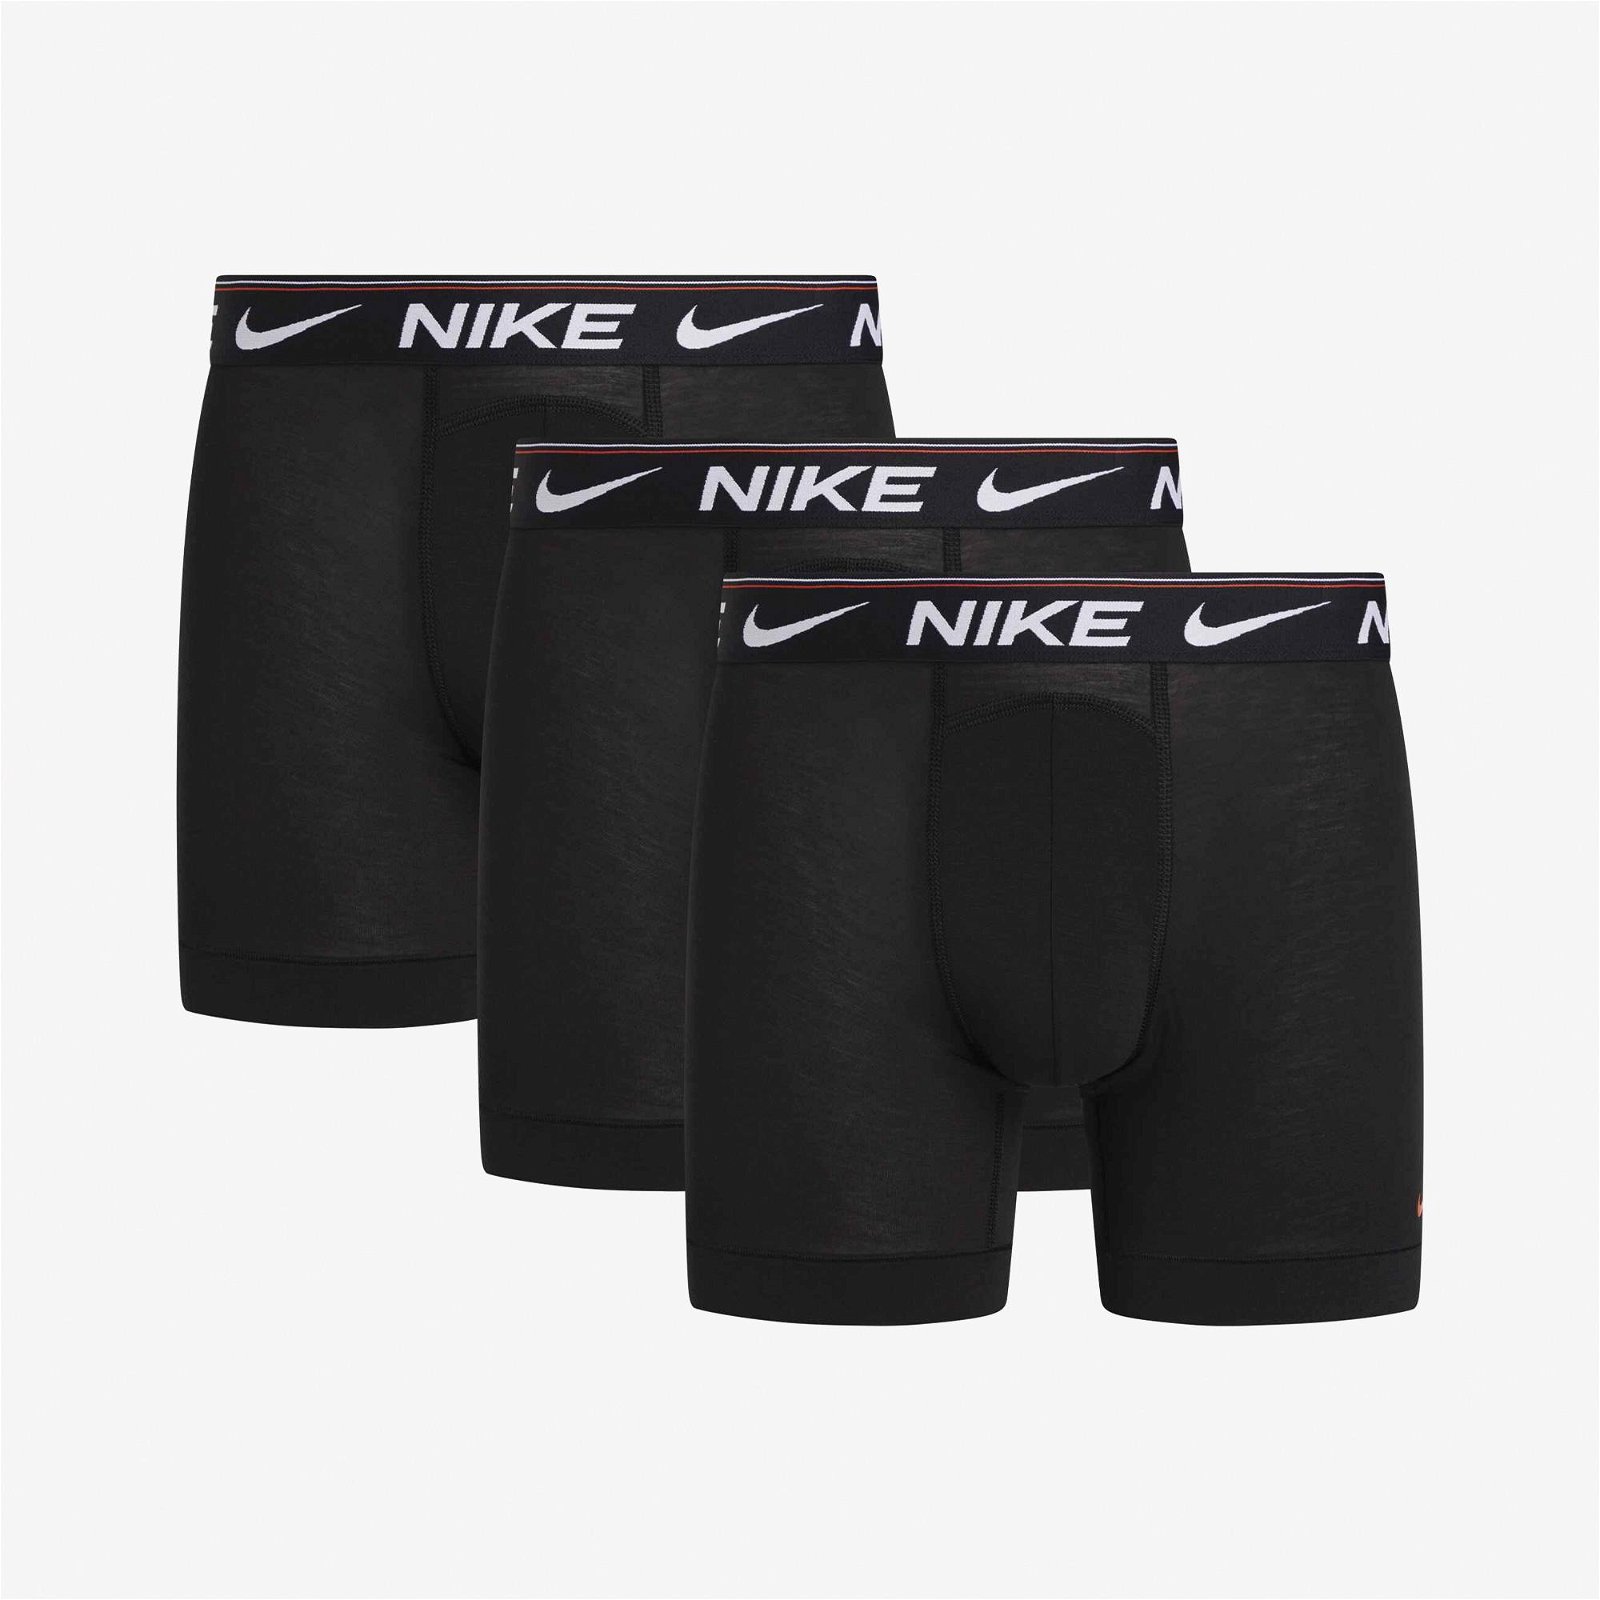 Nike Ultra Comfort Erkek Siyah Boxer